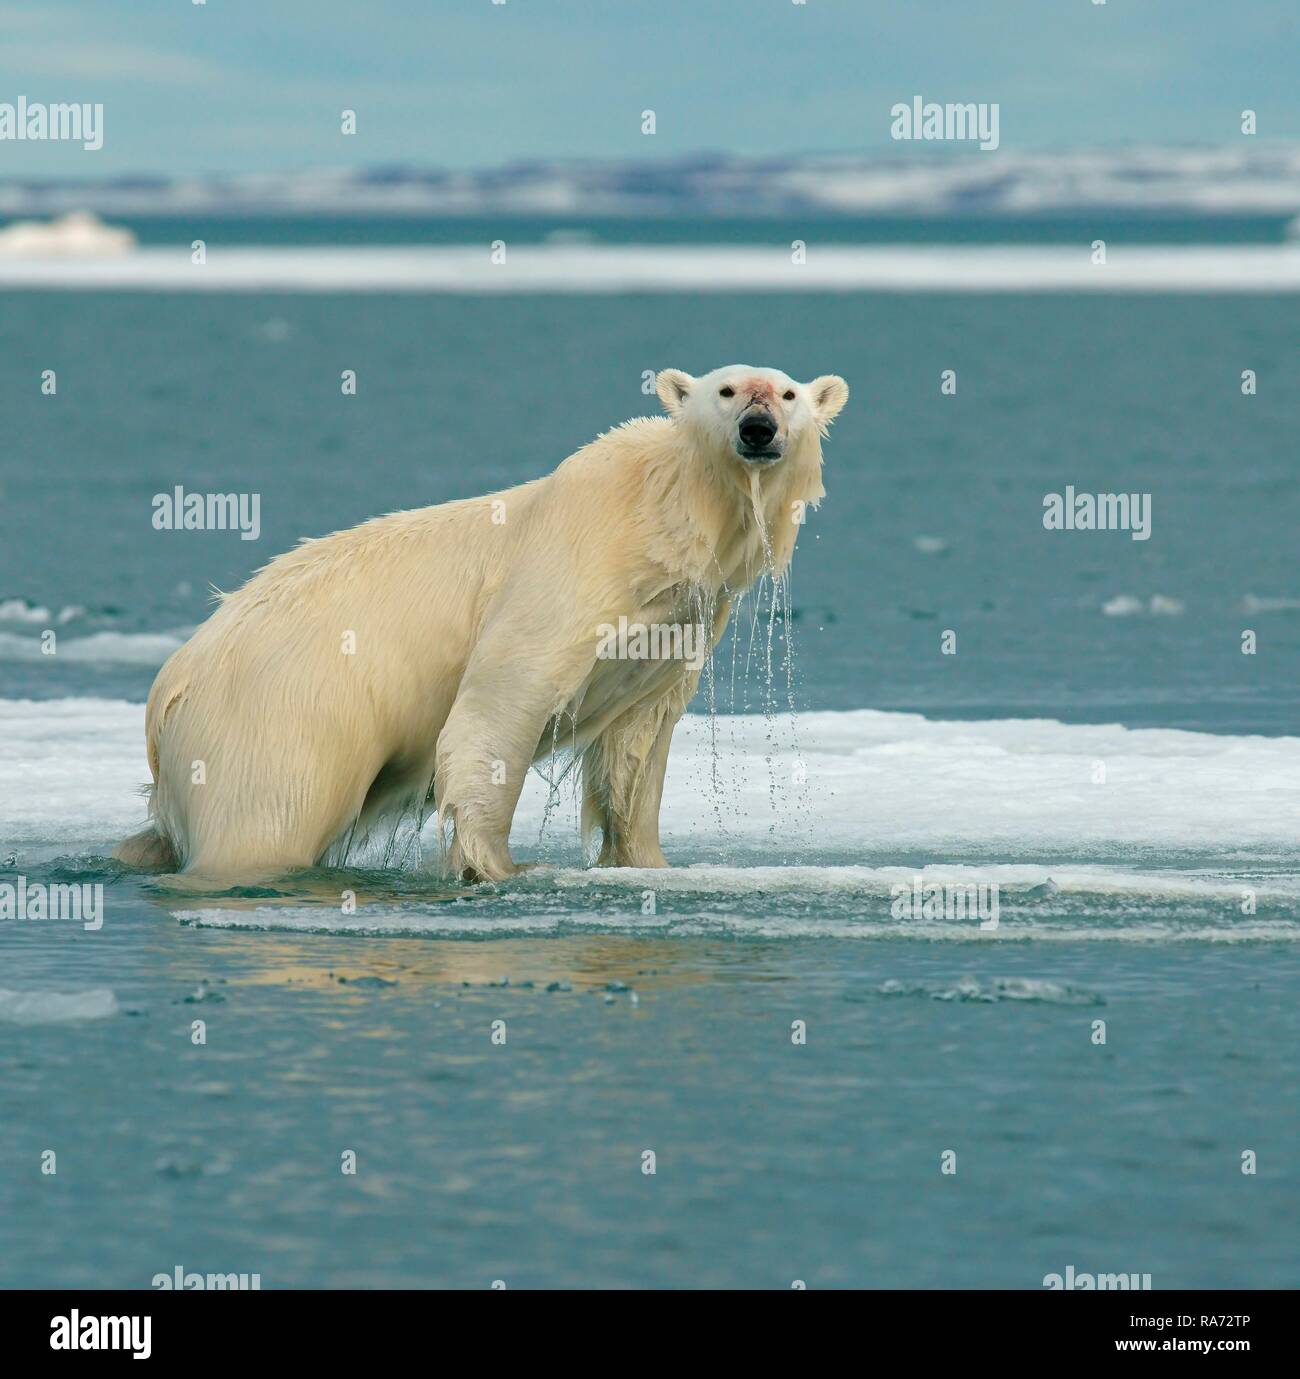 Eisbär (Ursus maritimus) steht auf Eis, Wasser tropft aus dem nassen Fell, in der norwegischen Arktis Svalbard, Norwegen Stockfoto